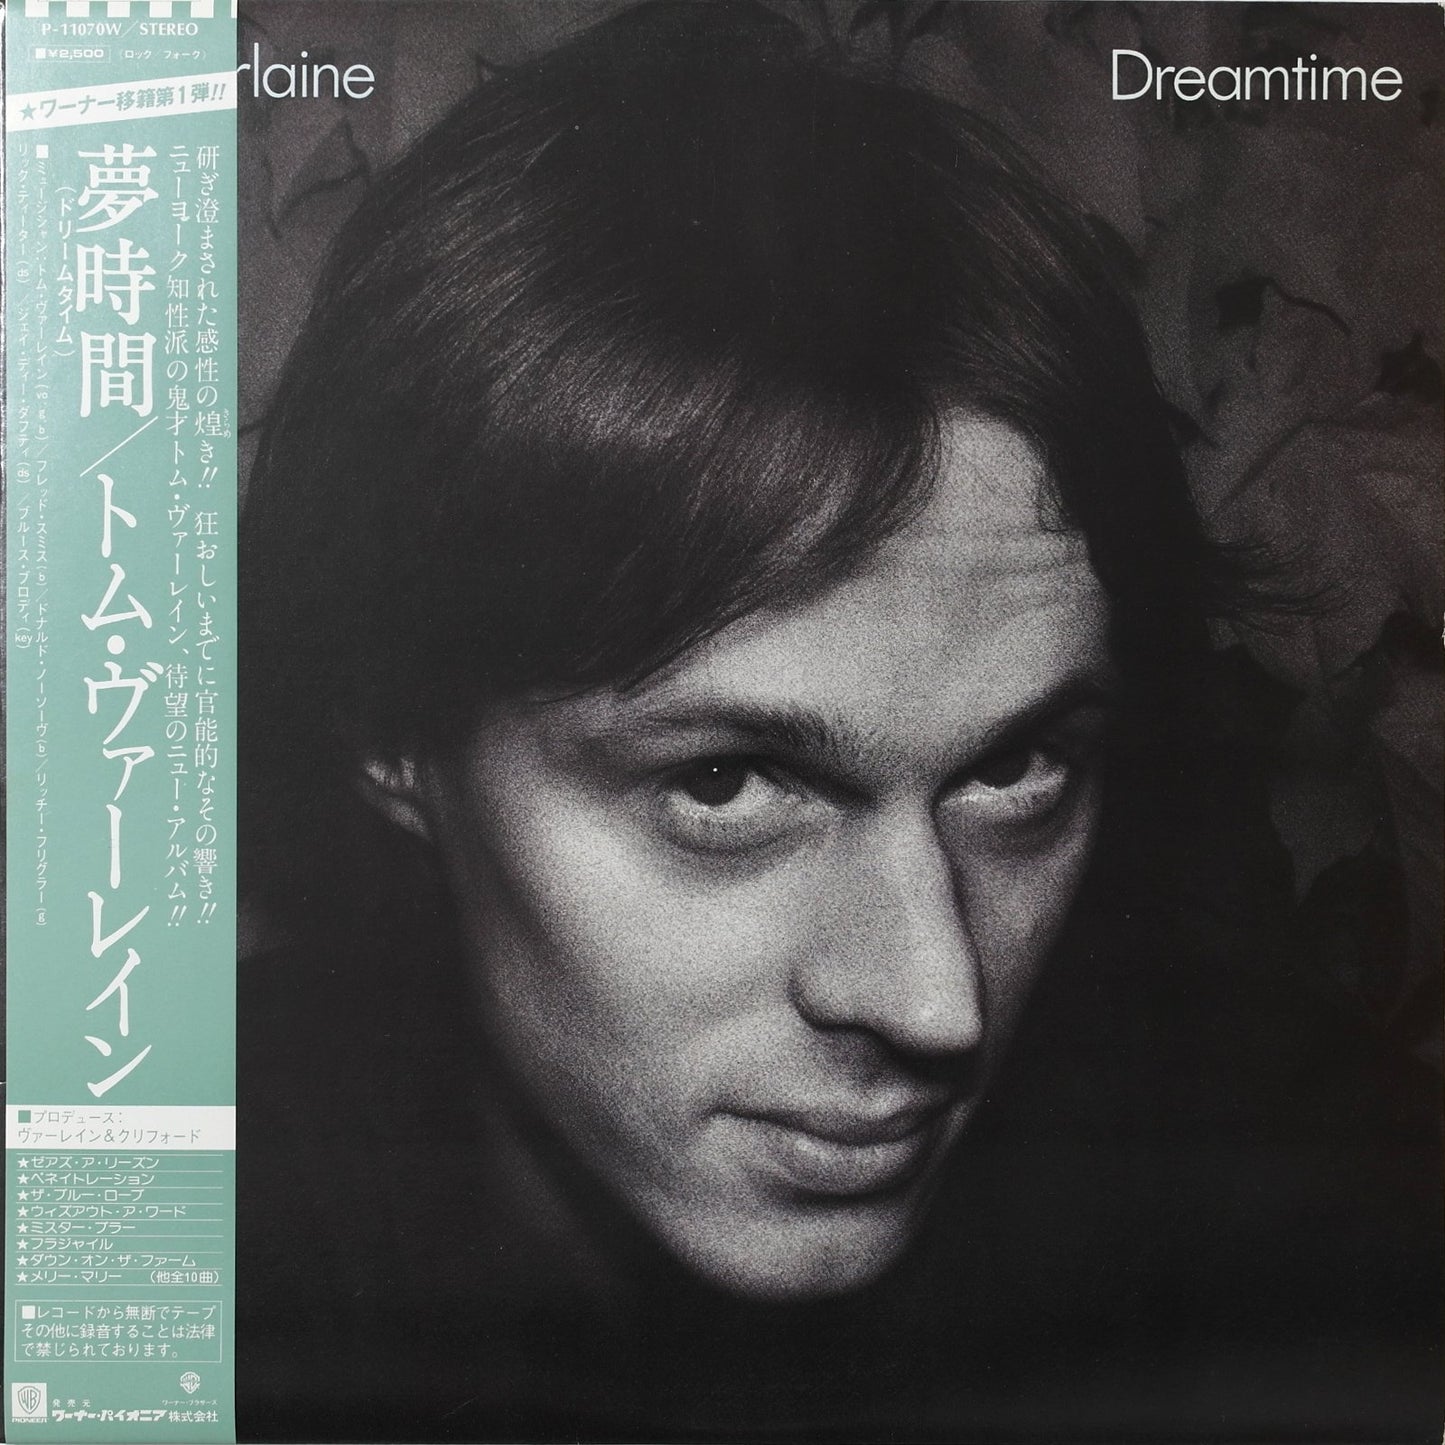 TOM VERLAINE - Dreamtime